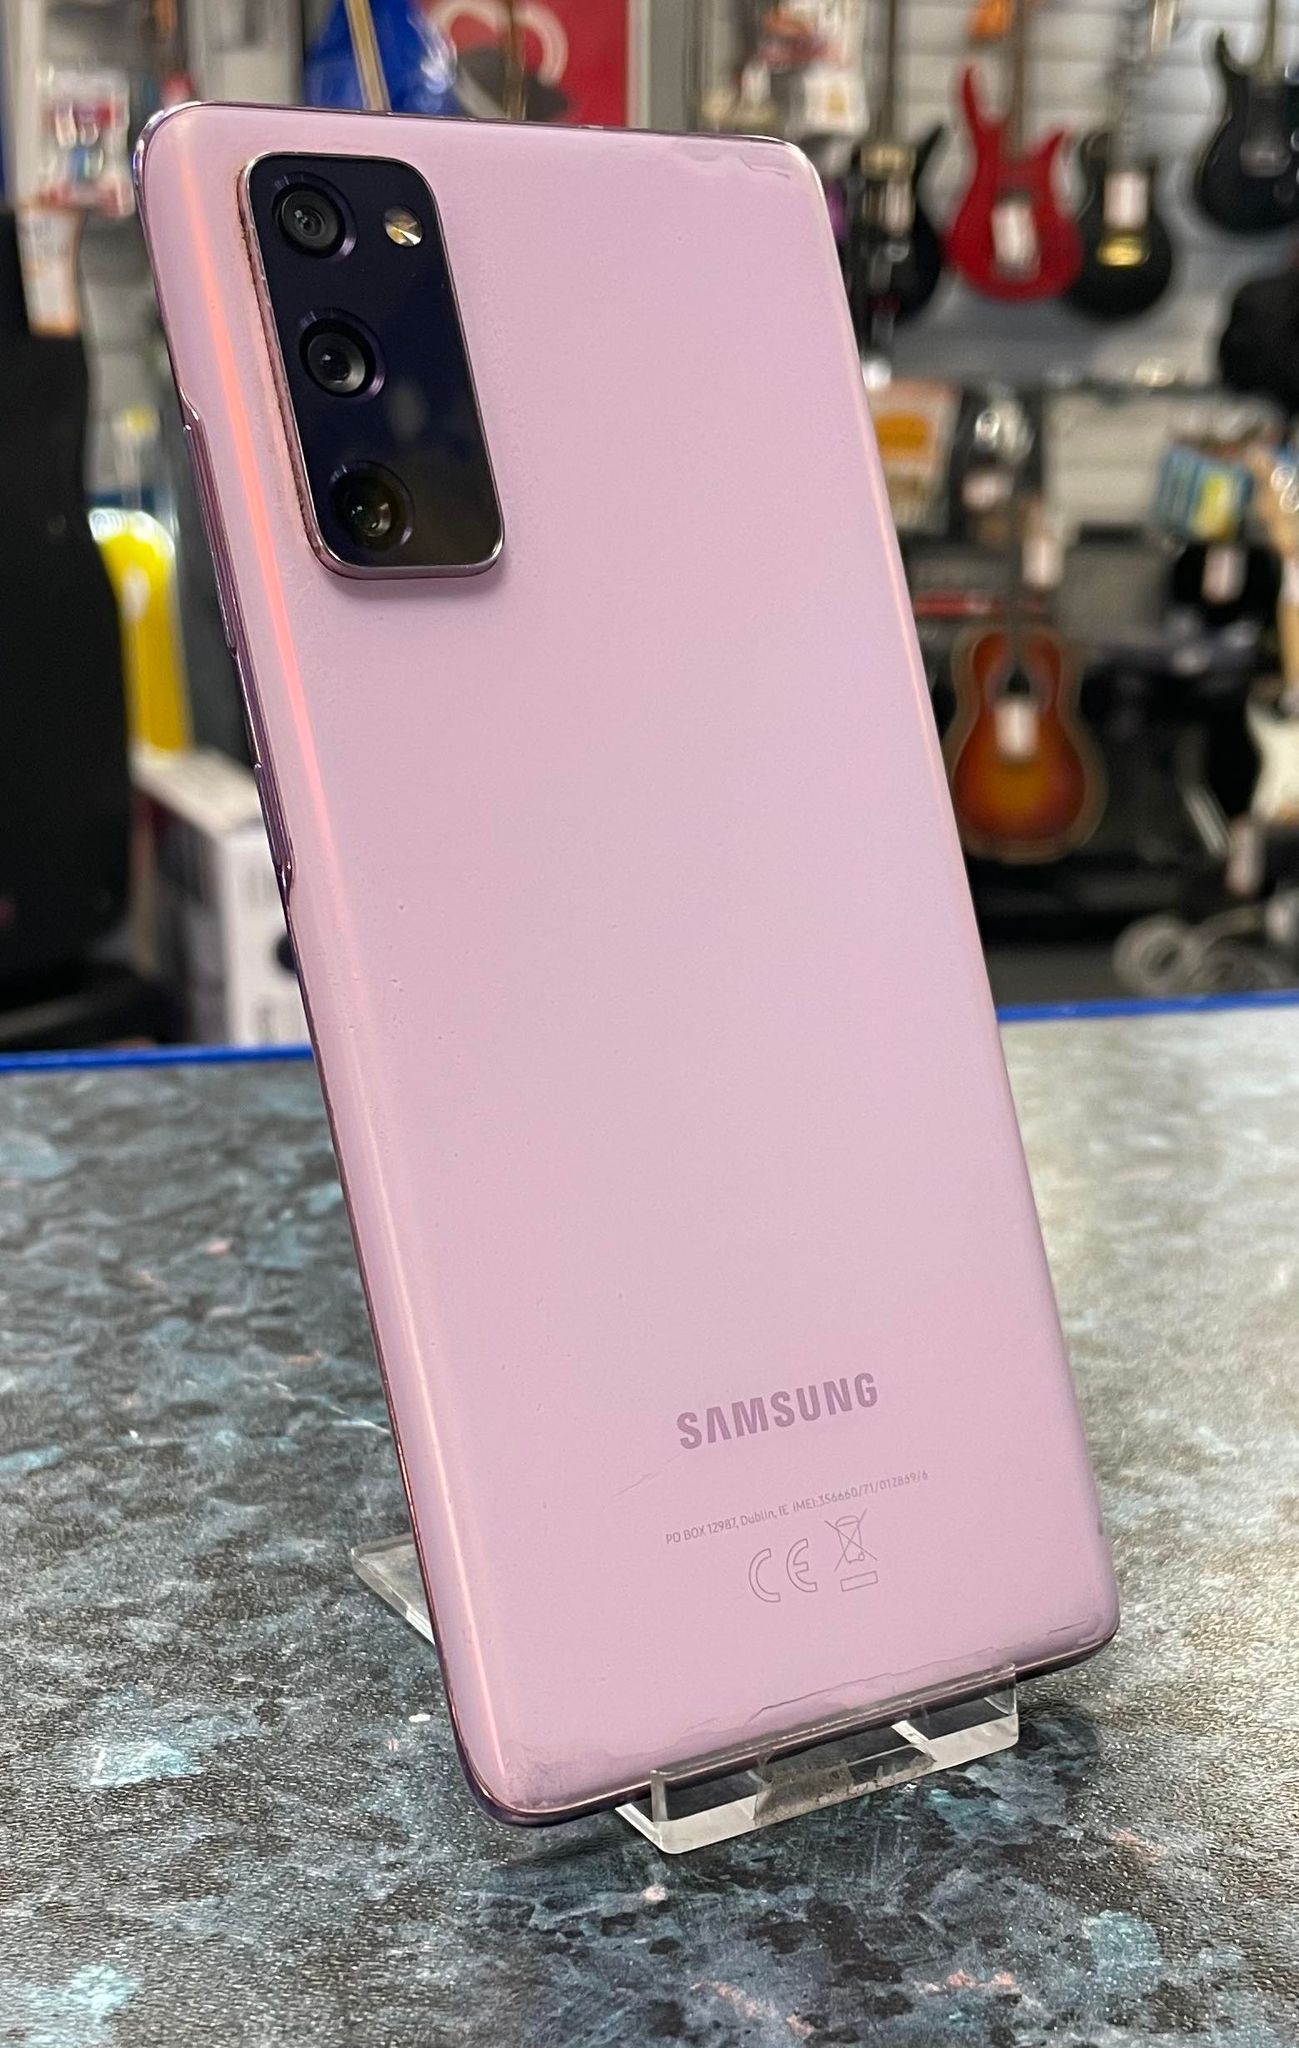 Samsung Galaxy S20 FE 128GB - Pink